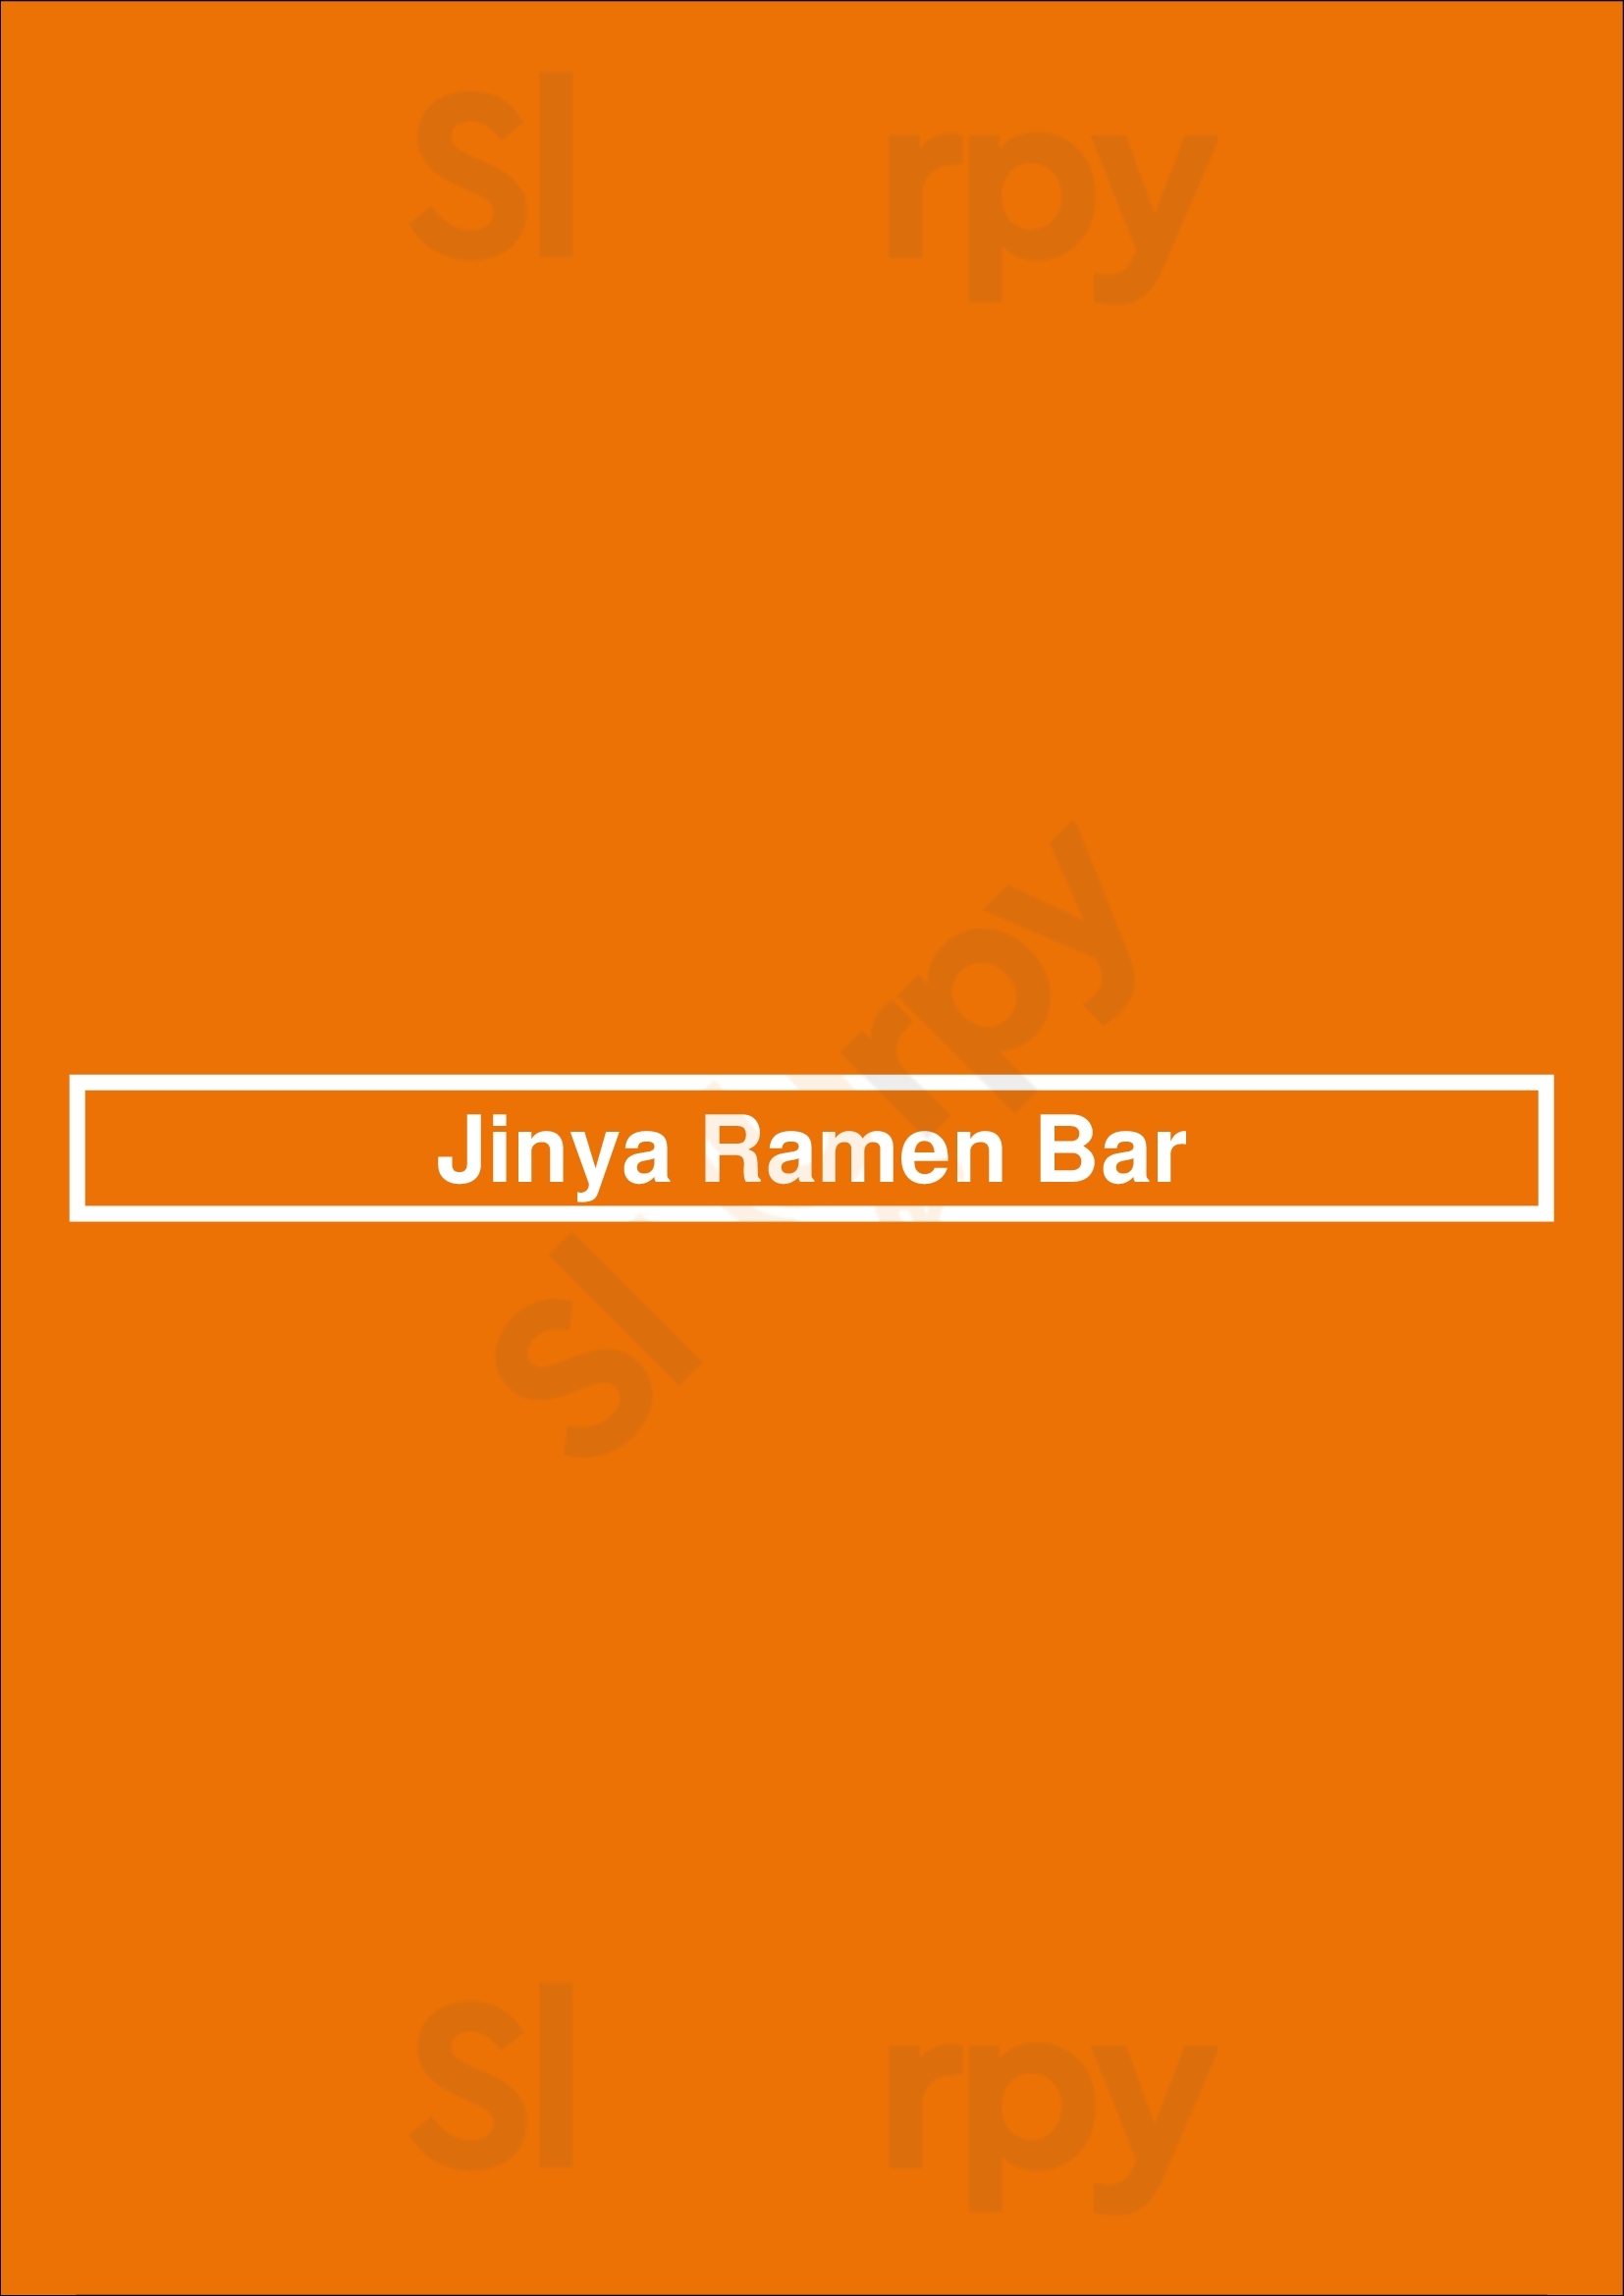 Jinya Ramen Bar - Tulsa Tulsa Menu - 1